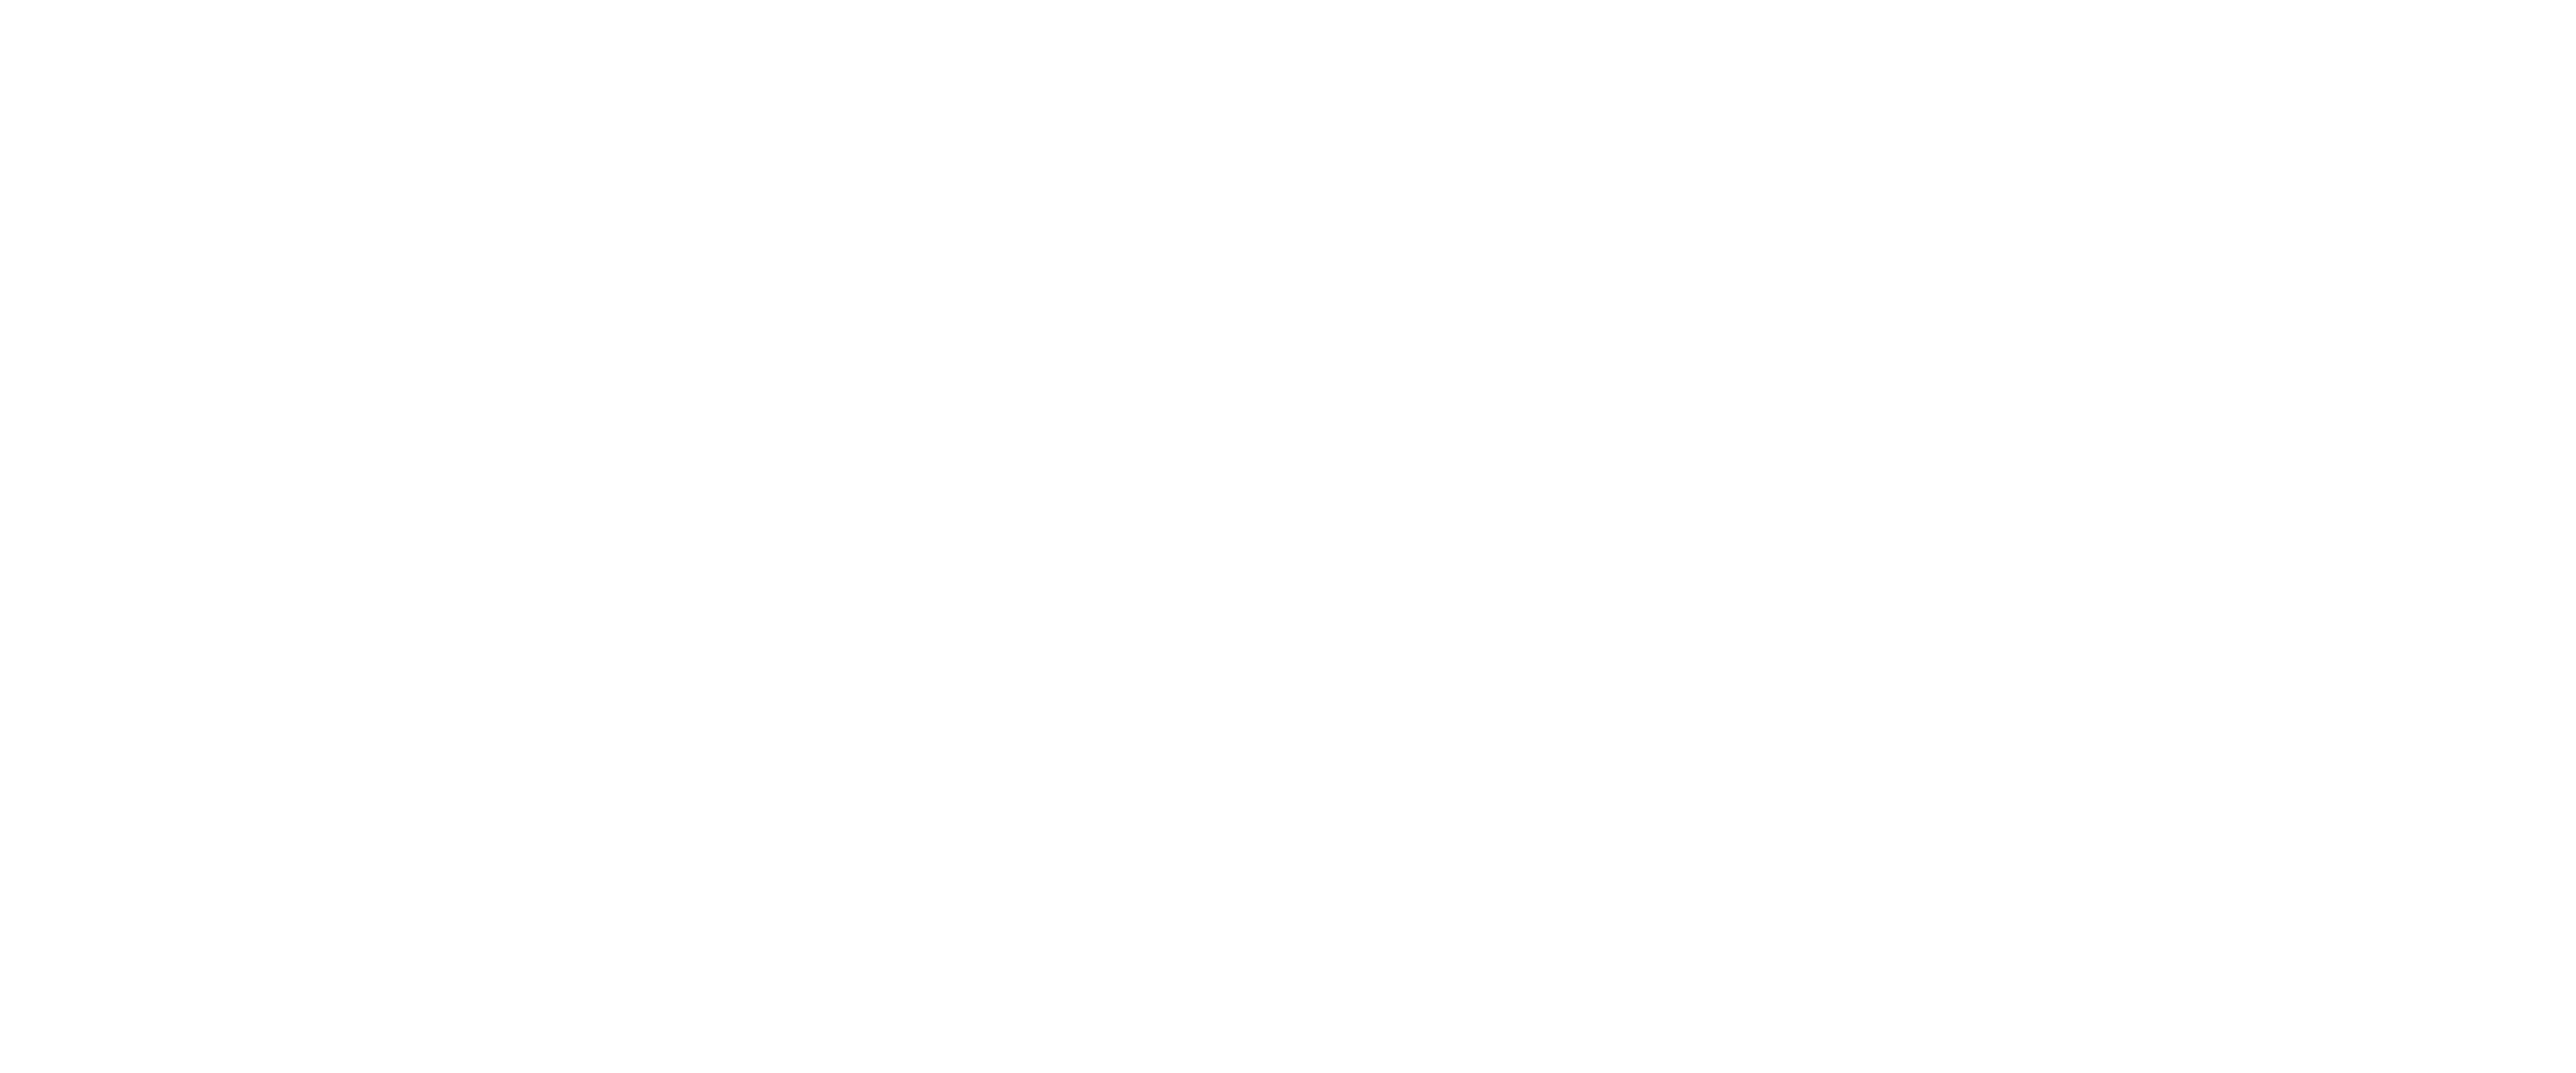 Tik Tok Logo.png White